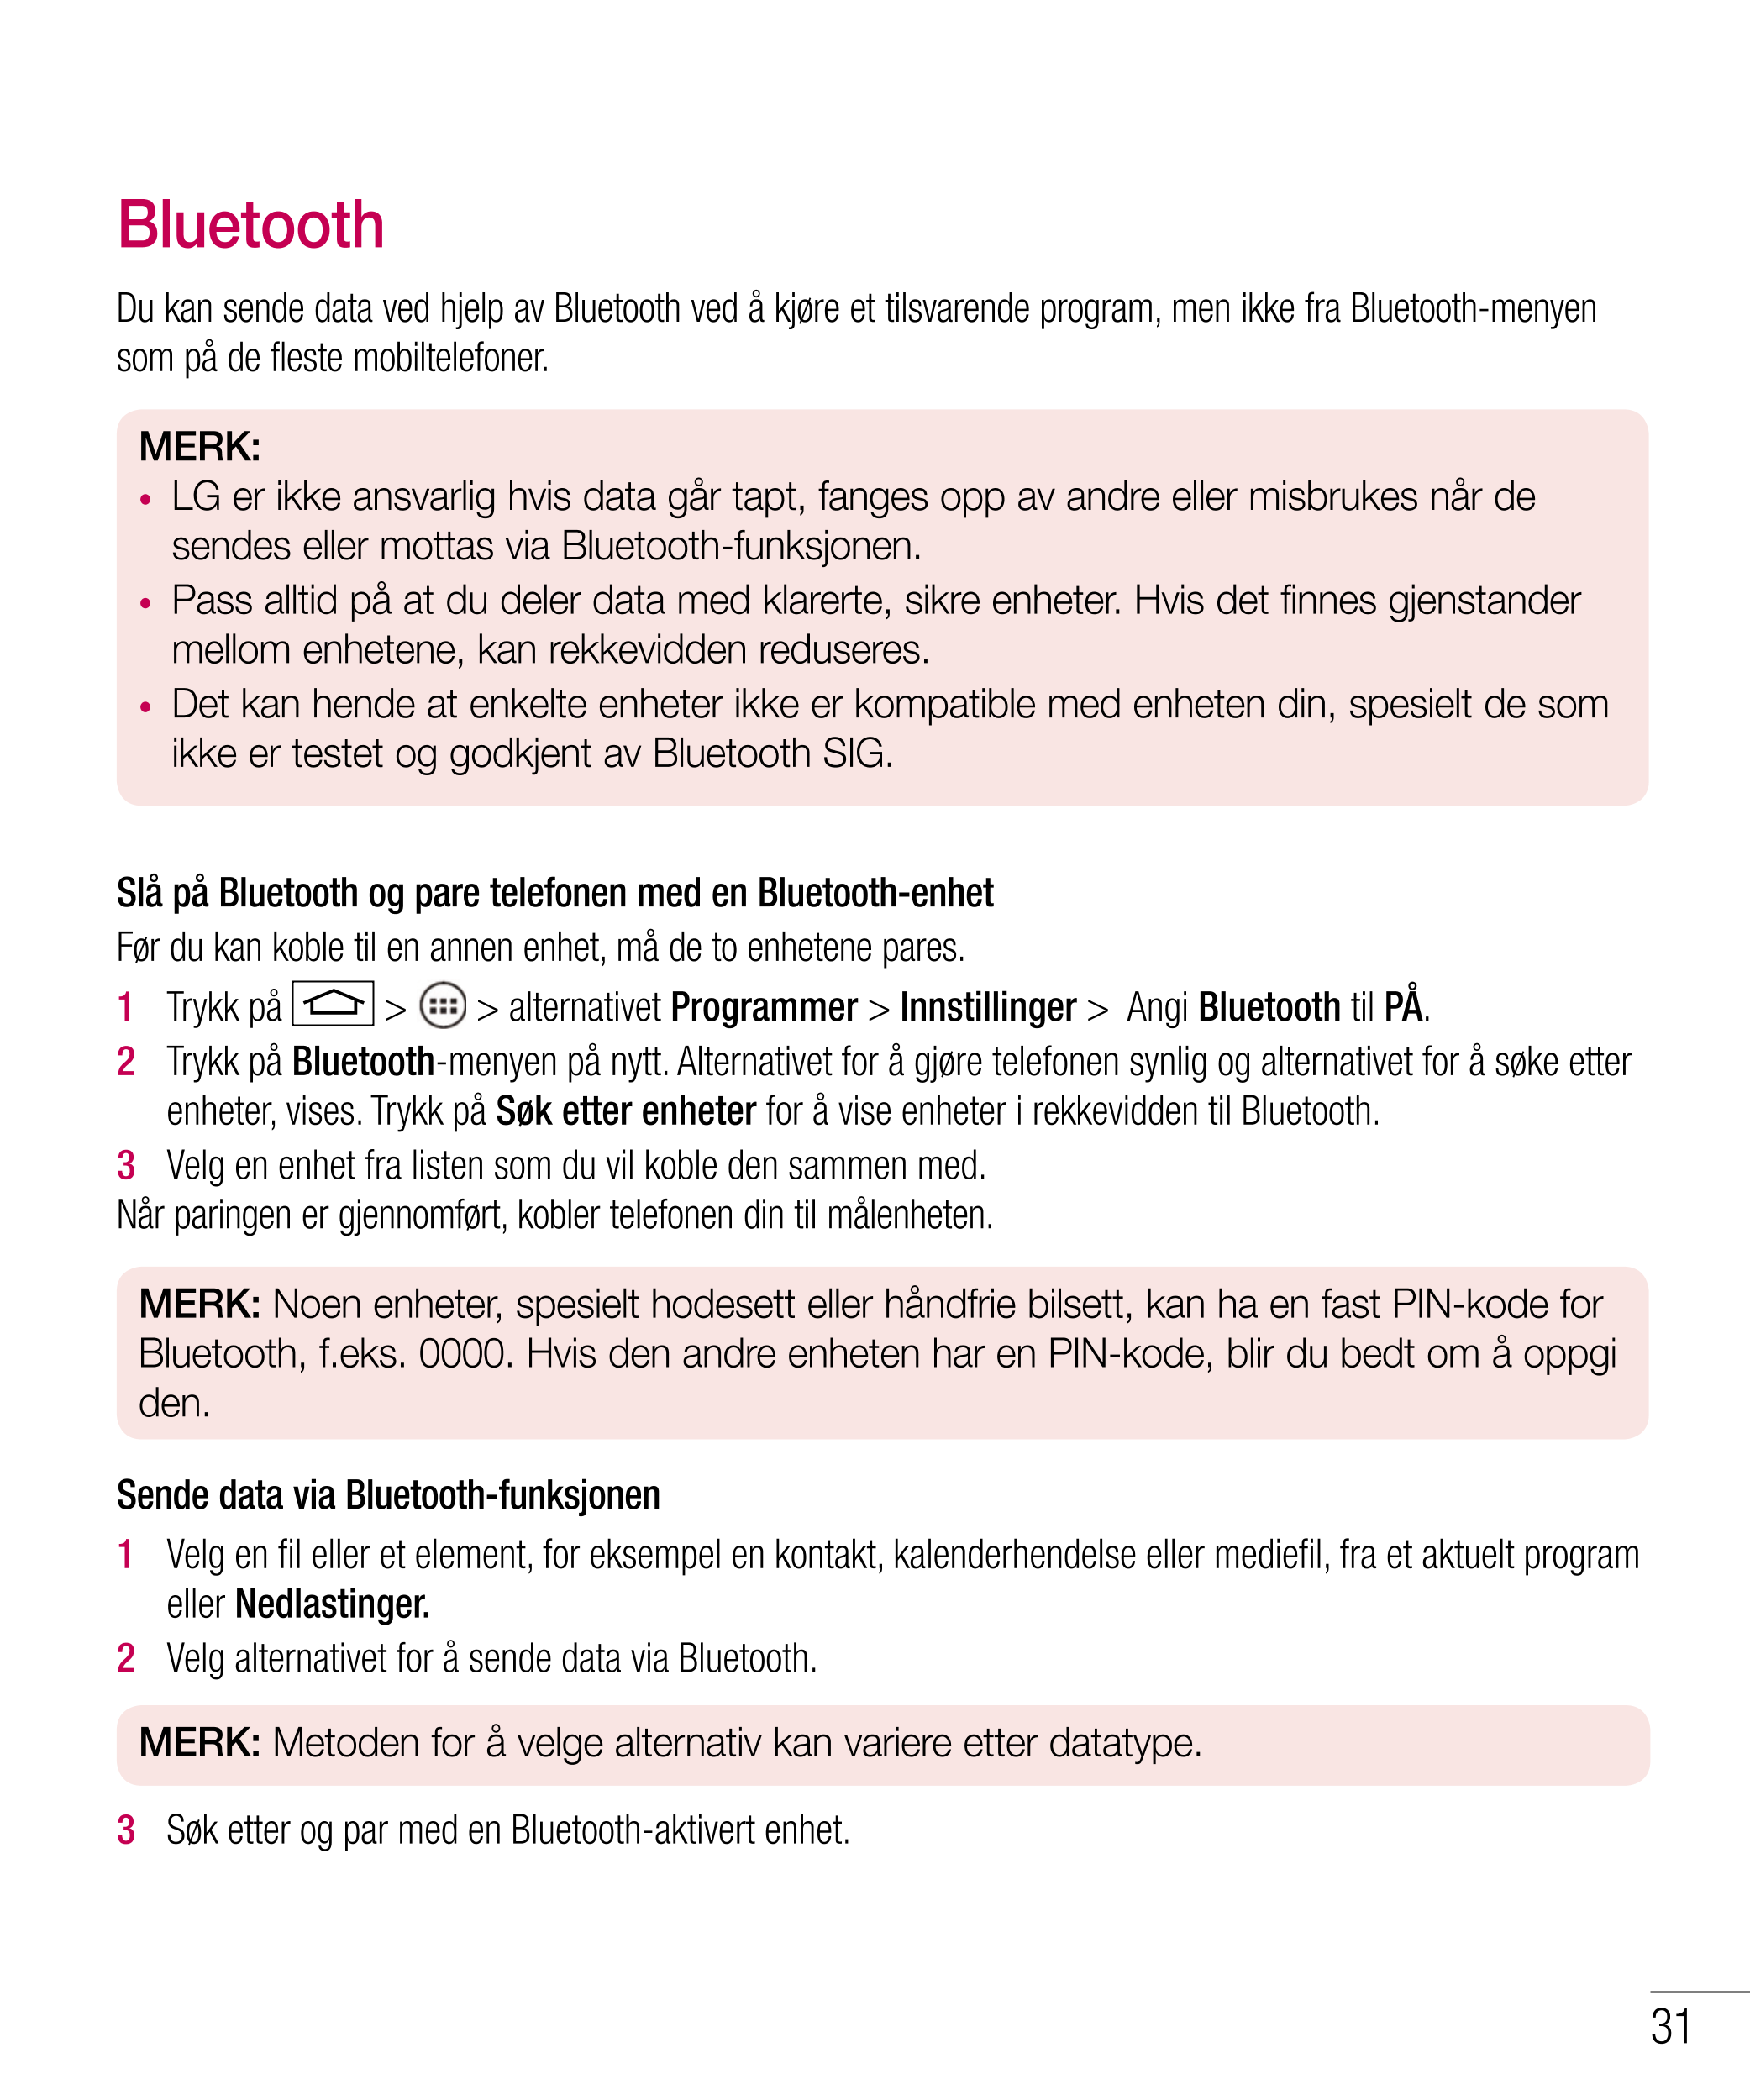 Bluetooth
Du kan sende data ved hjelp av Bluetooth ved å kjøre et tilsvarende program, men ikke fra Bluetooth-menyen 
som på de 